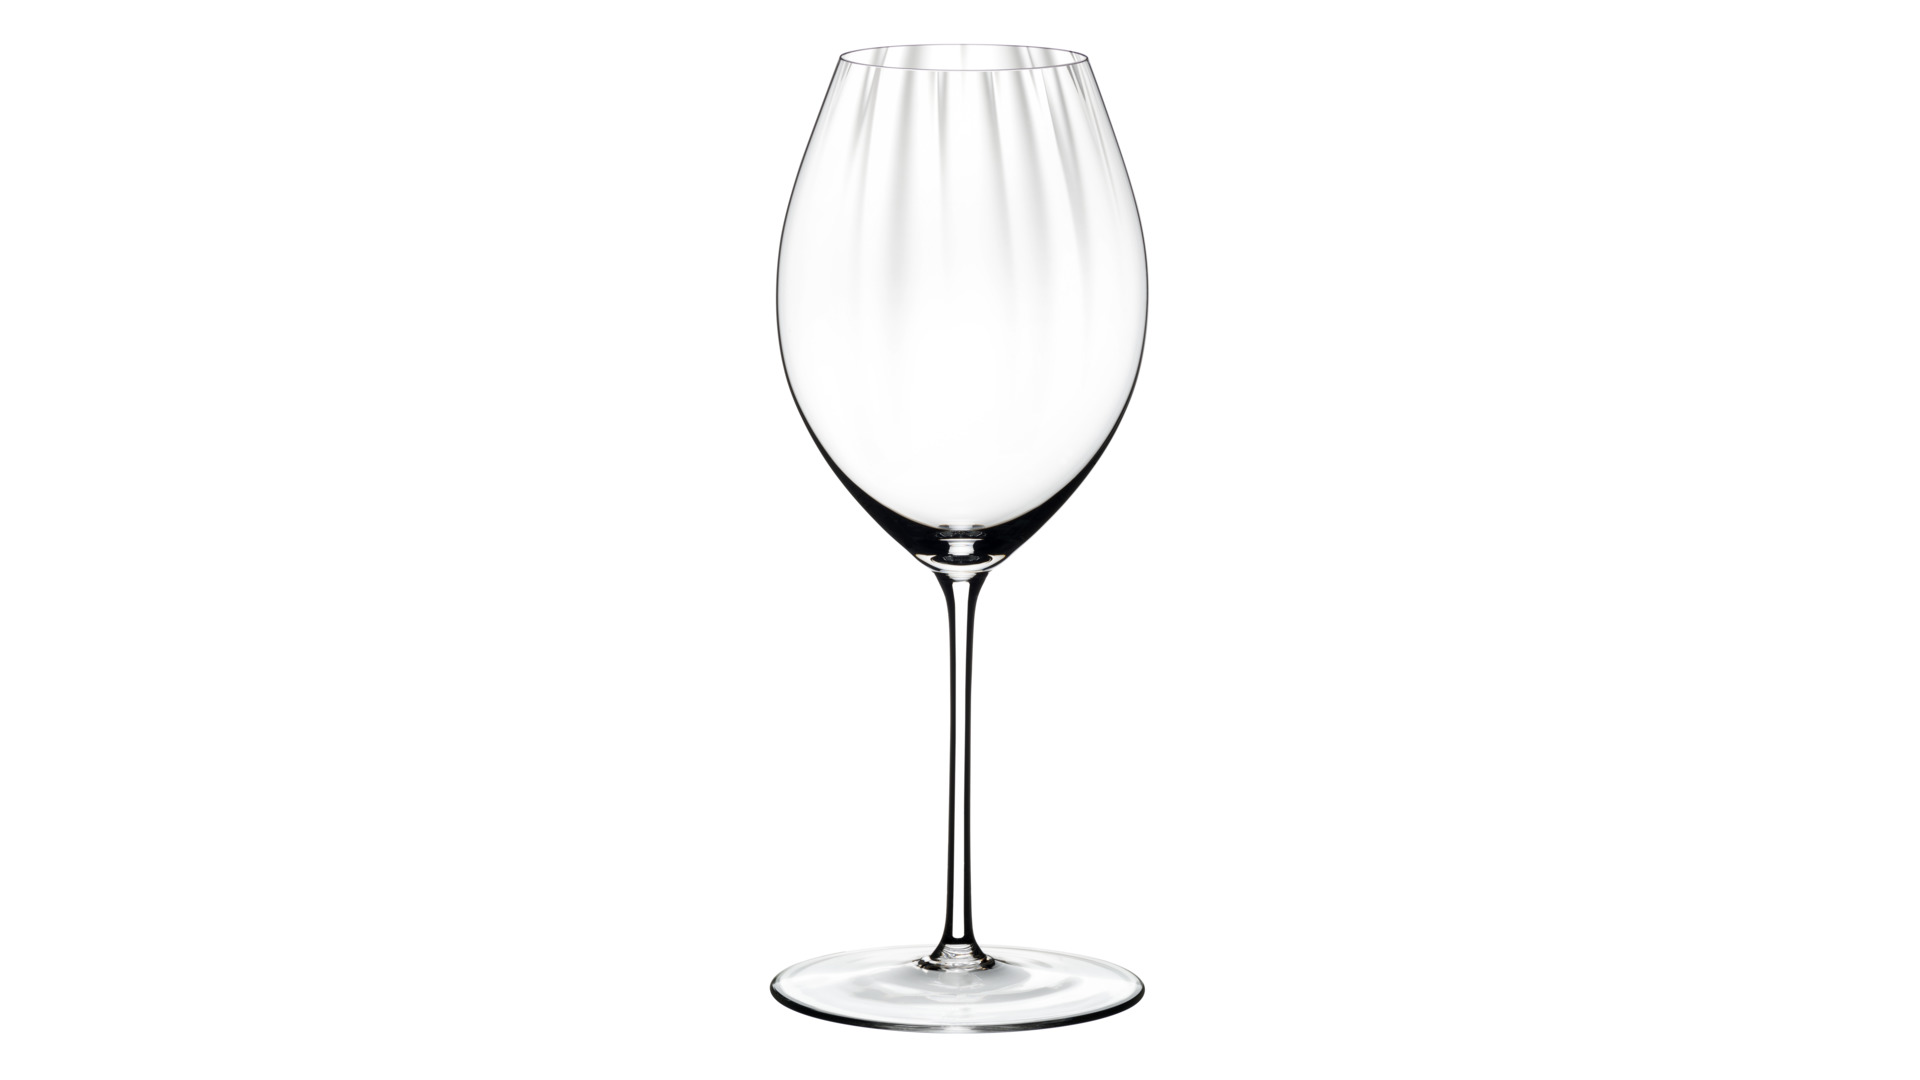 Набор бокалов для красного вина Riedel Performance Шираз 631 мл, h24,5 см, 2 шт, хрусталь бессвинцов